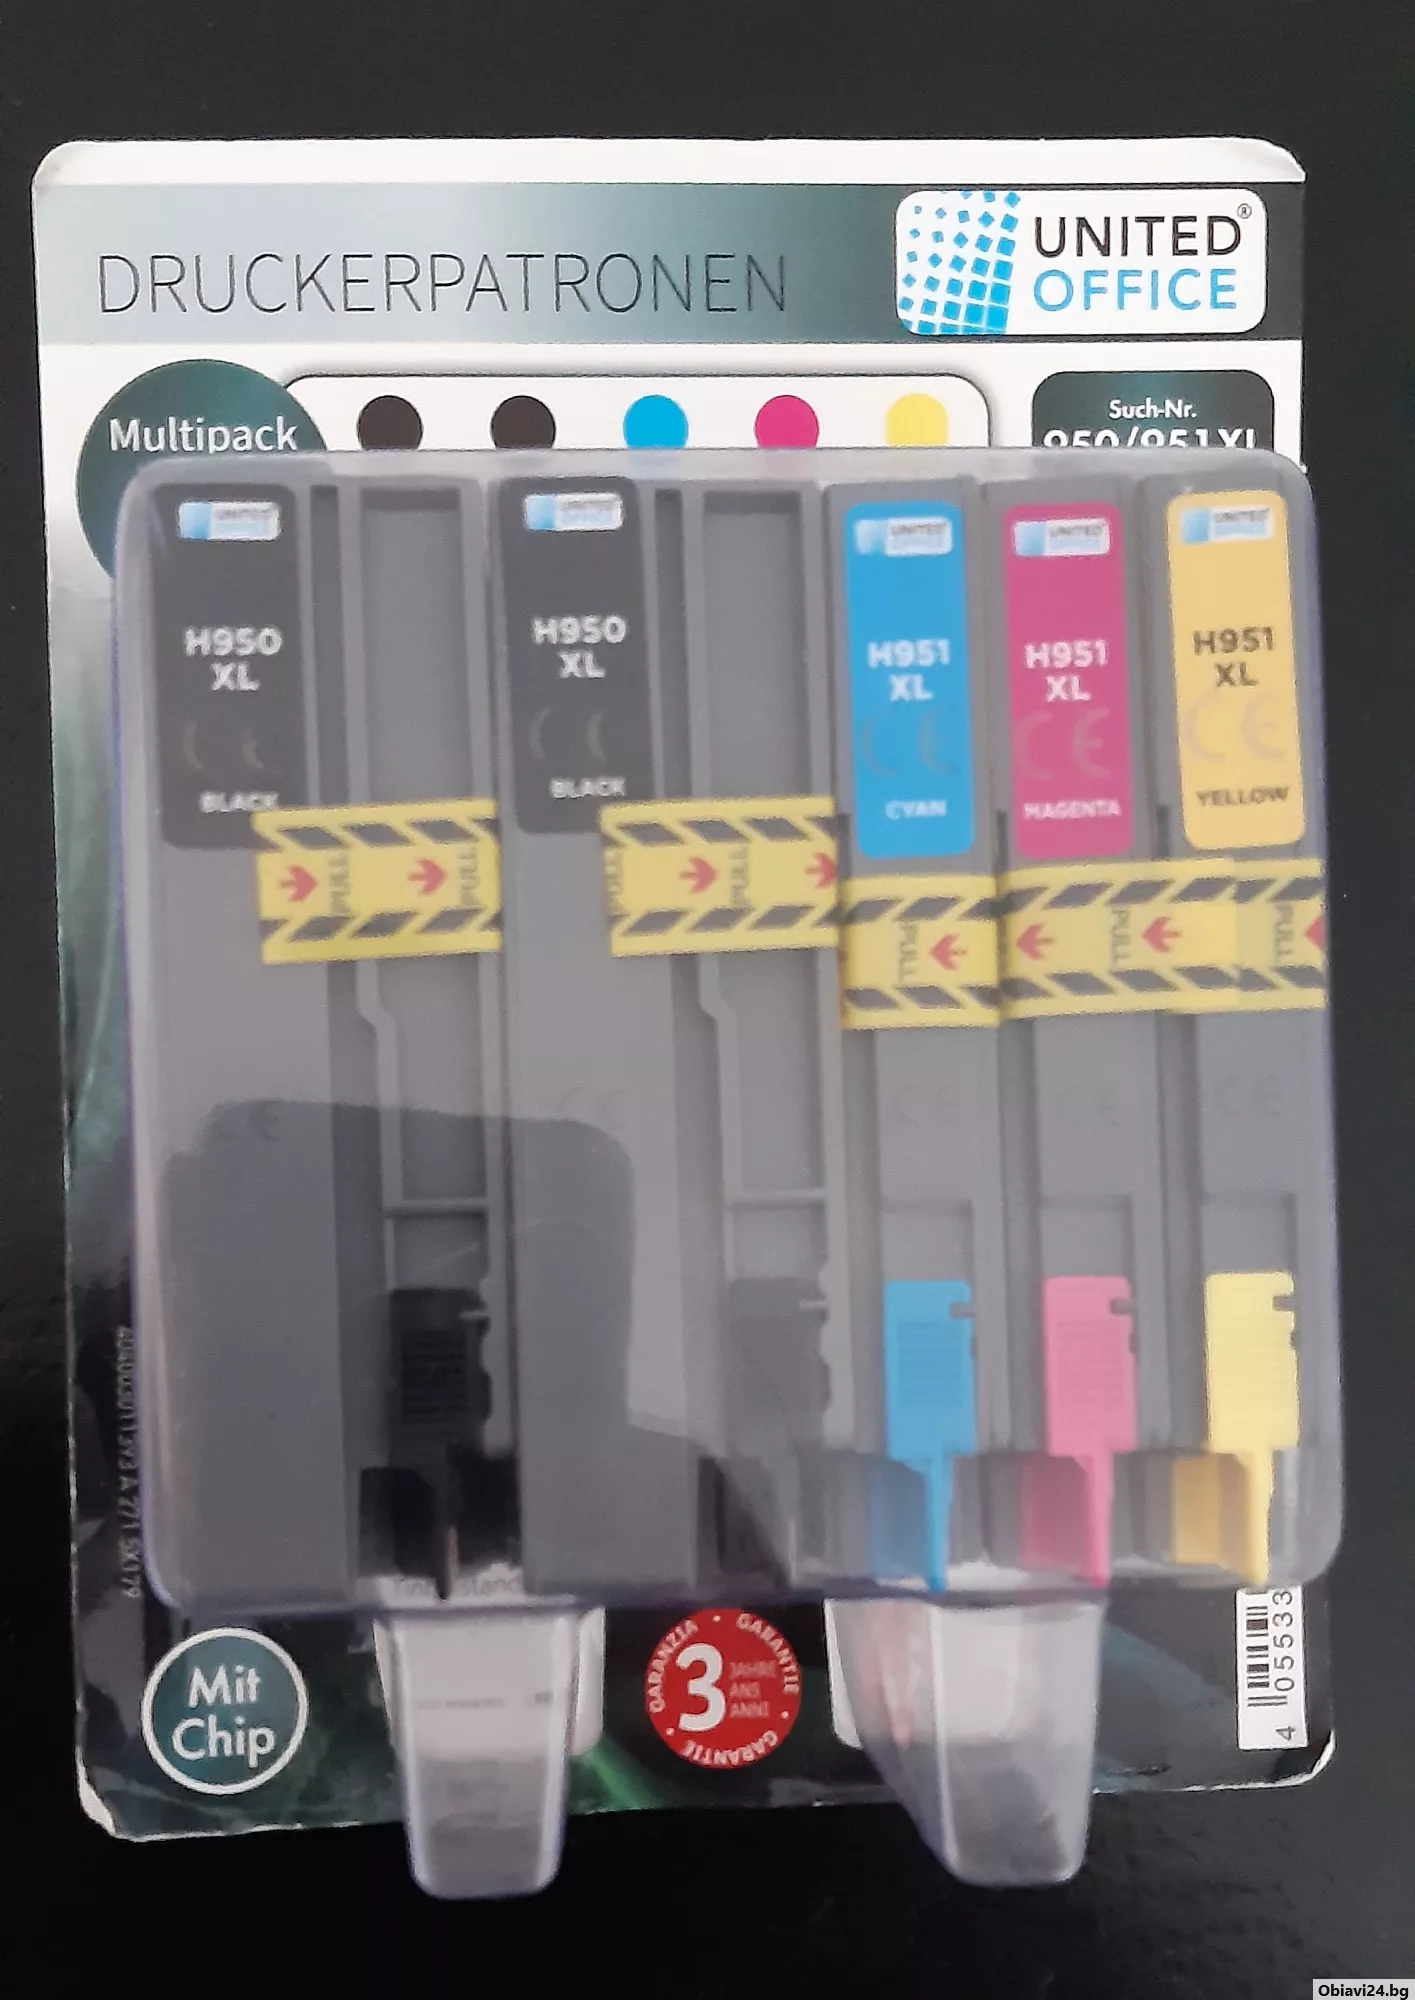 Комплект касети за цветен принтер HP, Canon или Еpson - obiavi24.bg